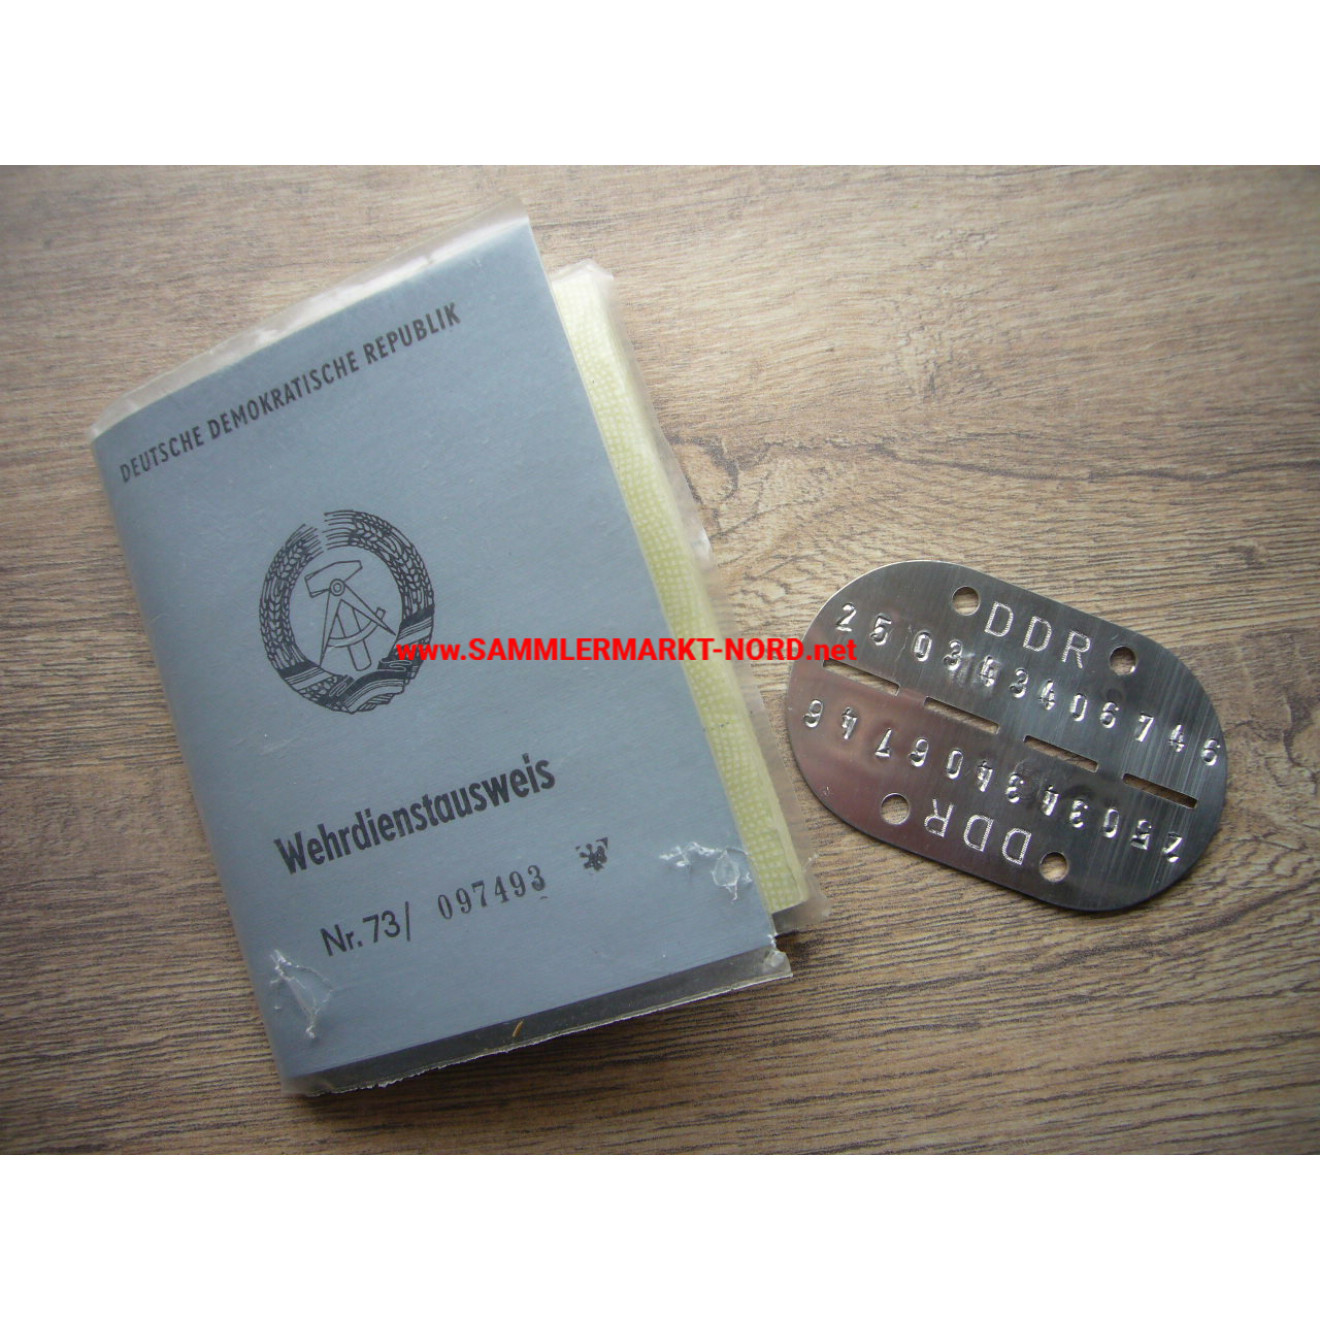 DDR - Wehrdienstausweis & Erkennungsmarke